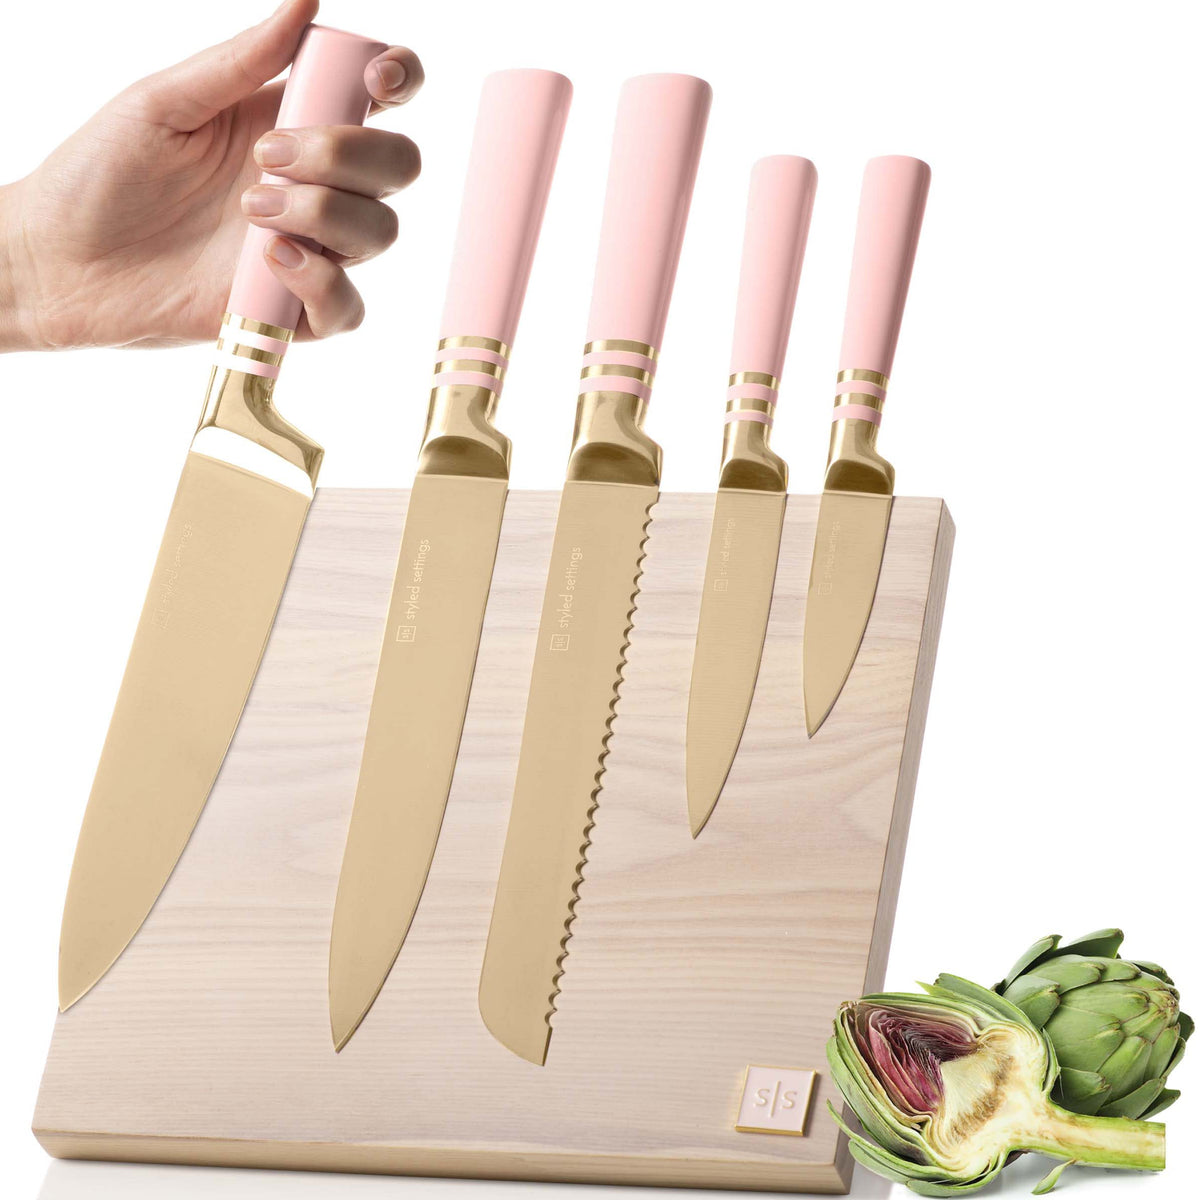  CHUYIREN Kitchen Knife Set, Pink Knife Set, High